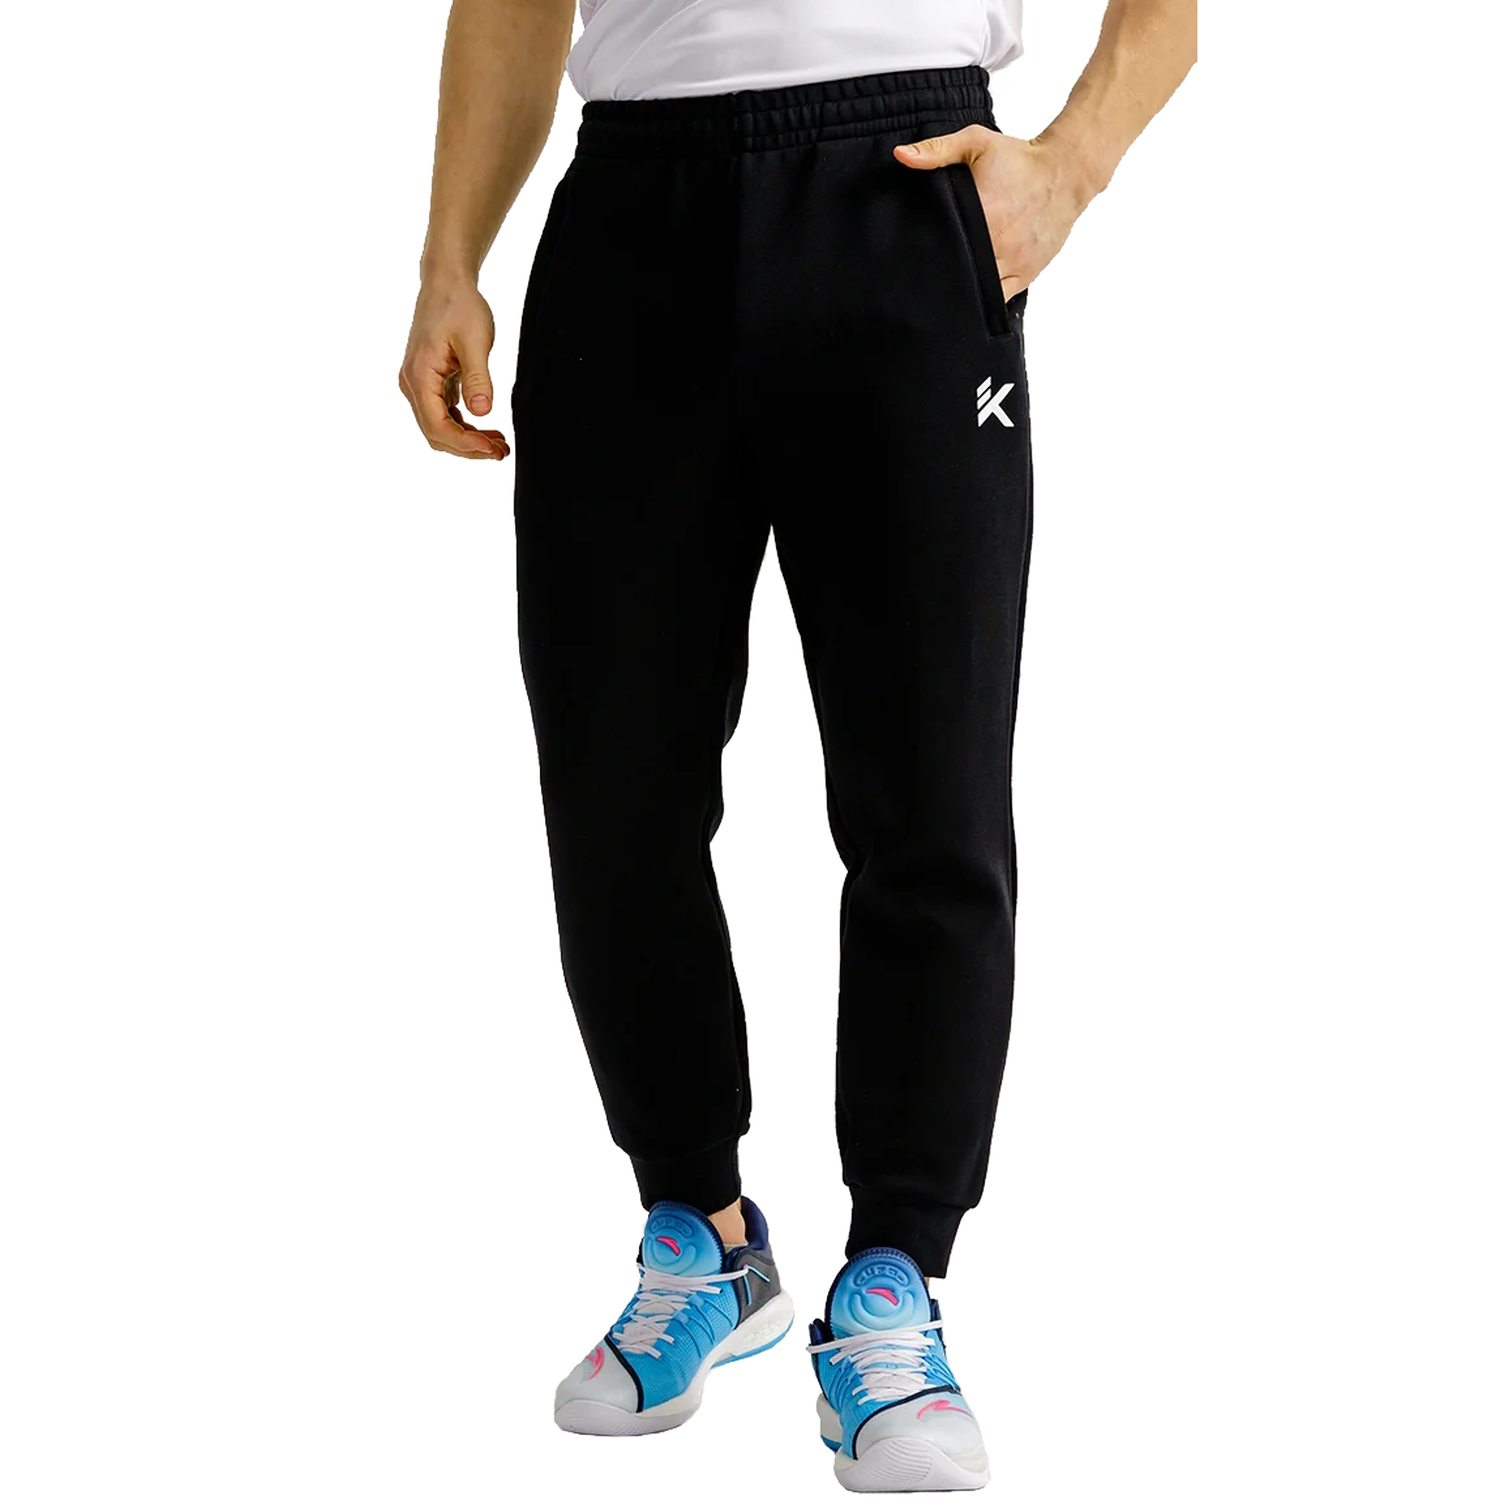 Спортивные брюки мужские Anta KT KNIT TRACK PANTS черные S - купить в Anta Sport Rus, цена на Мегамаркет